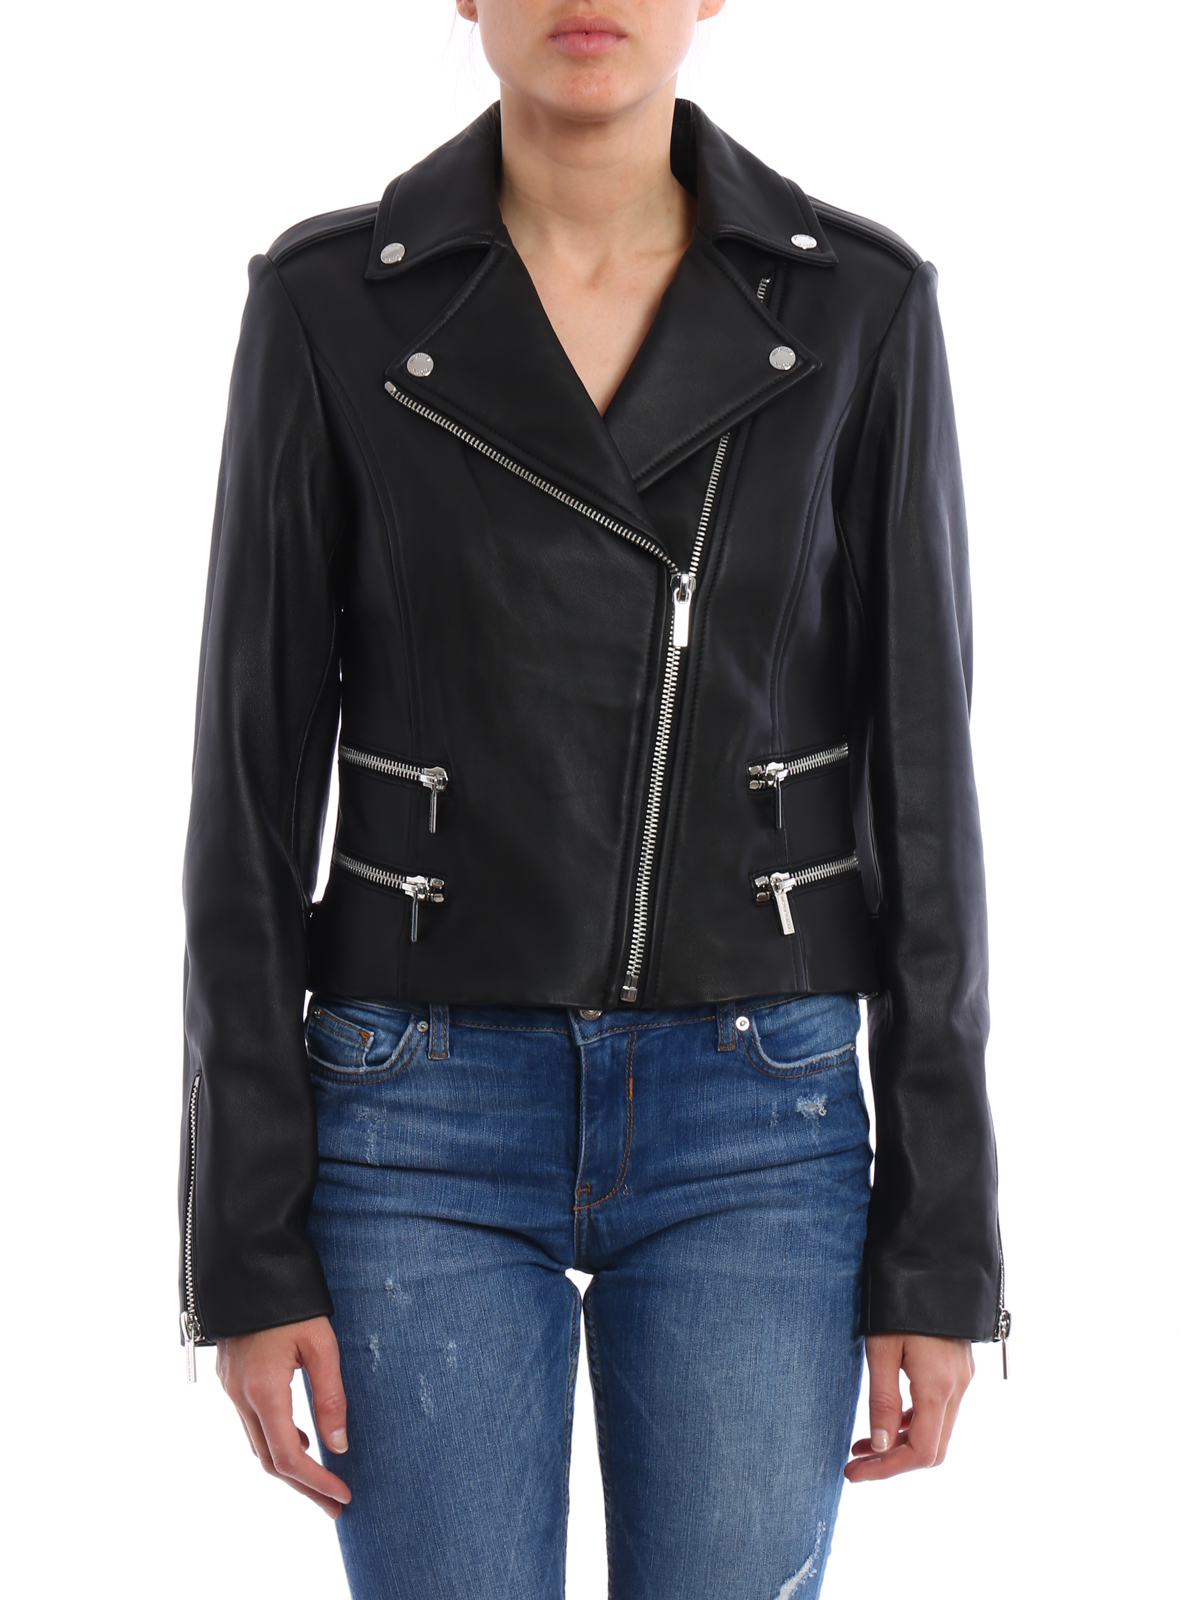 Leather jacket Michael Kors - Leather biker jacket - MS71EKV12F001